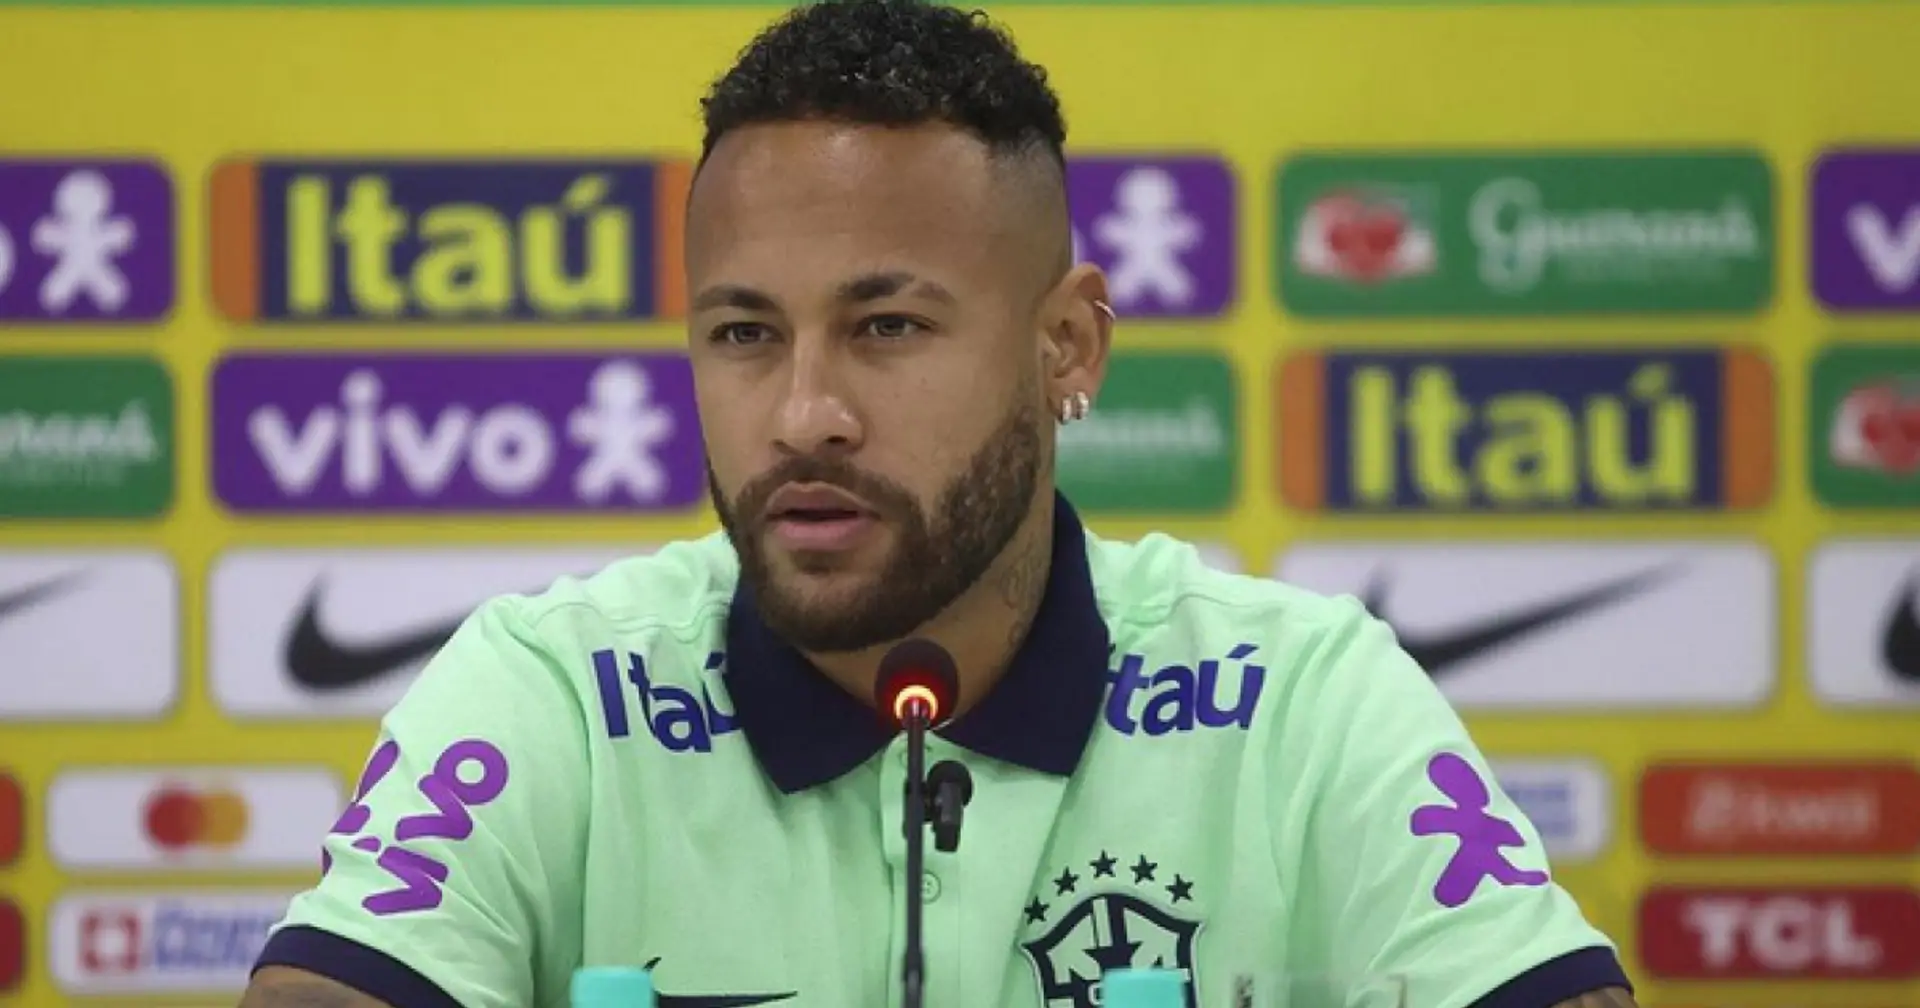 'C'est un mensonge. Arrêtez ça' : Neymar crie sur les réseaux sociaux suite à une accusation scandaleuse